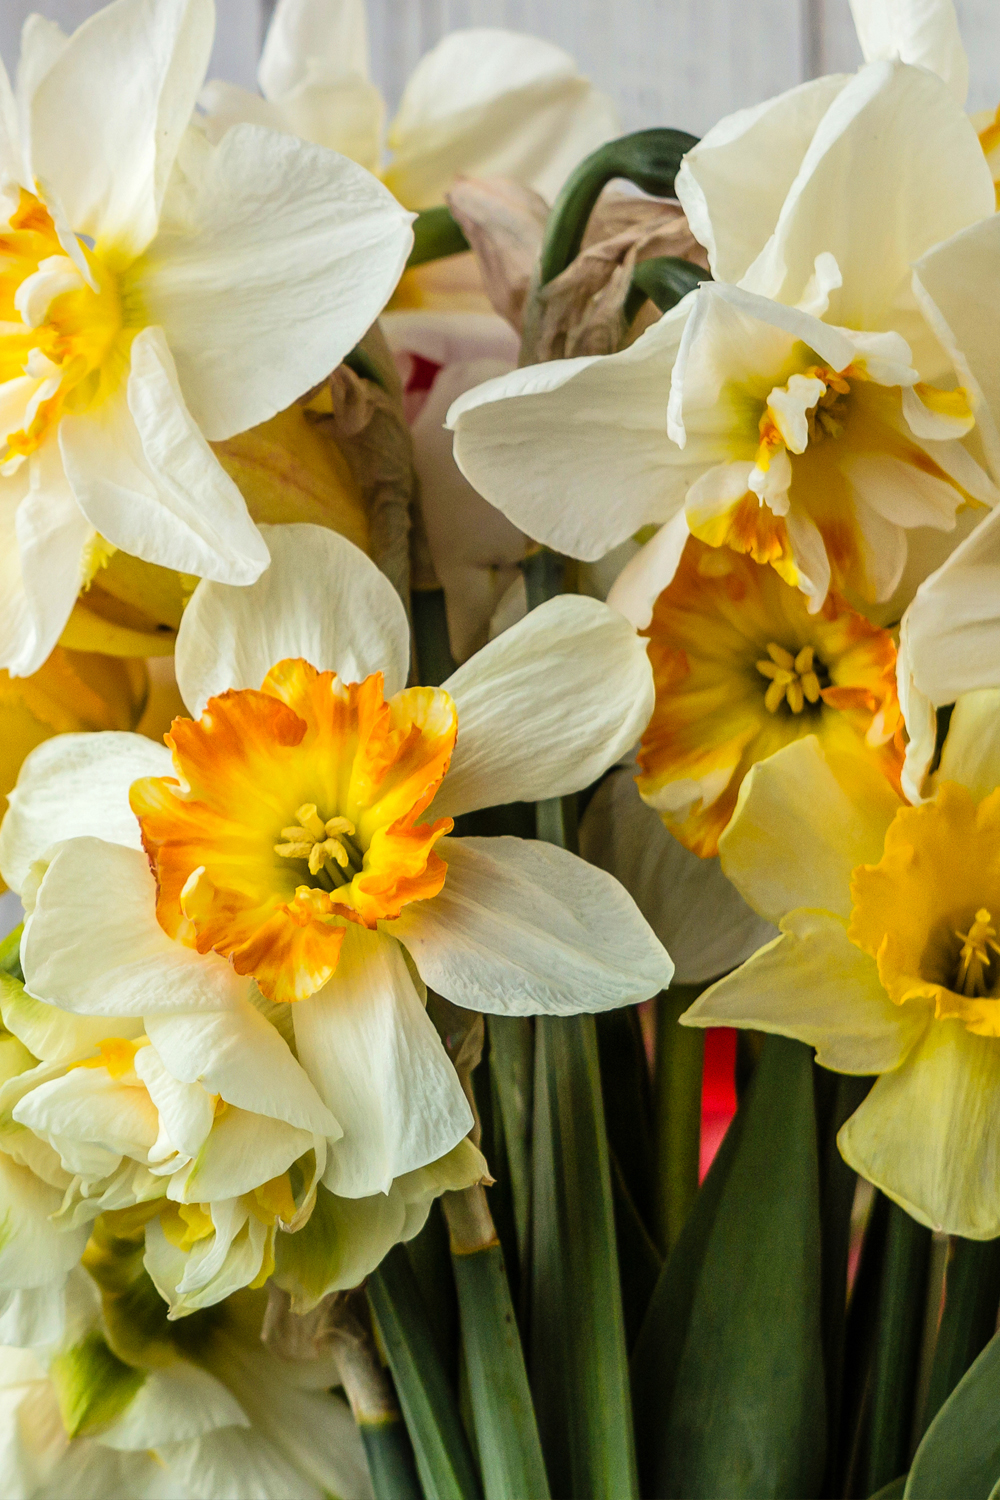 A - Mixed Daffodil Bulbs